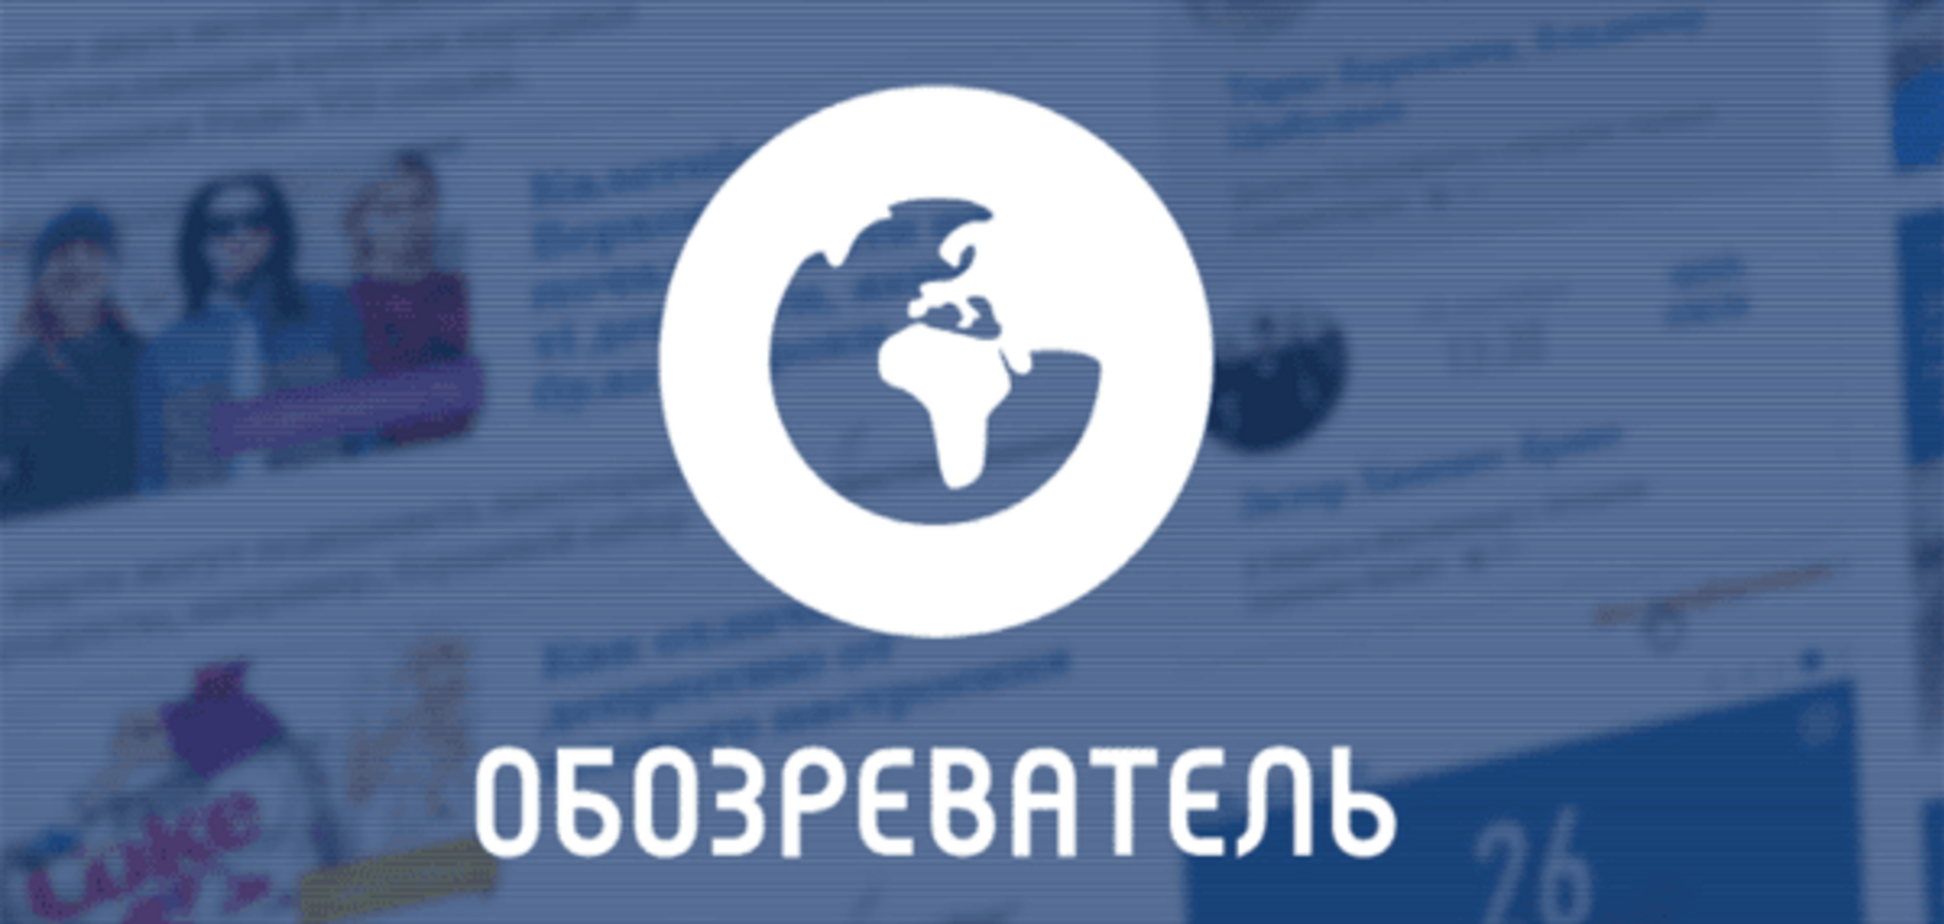 'Обозреватель' потрапив у топ найпопулярніших сайтів, якими користуються українці: інфографіка